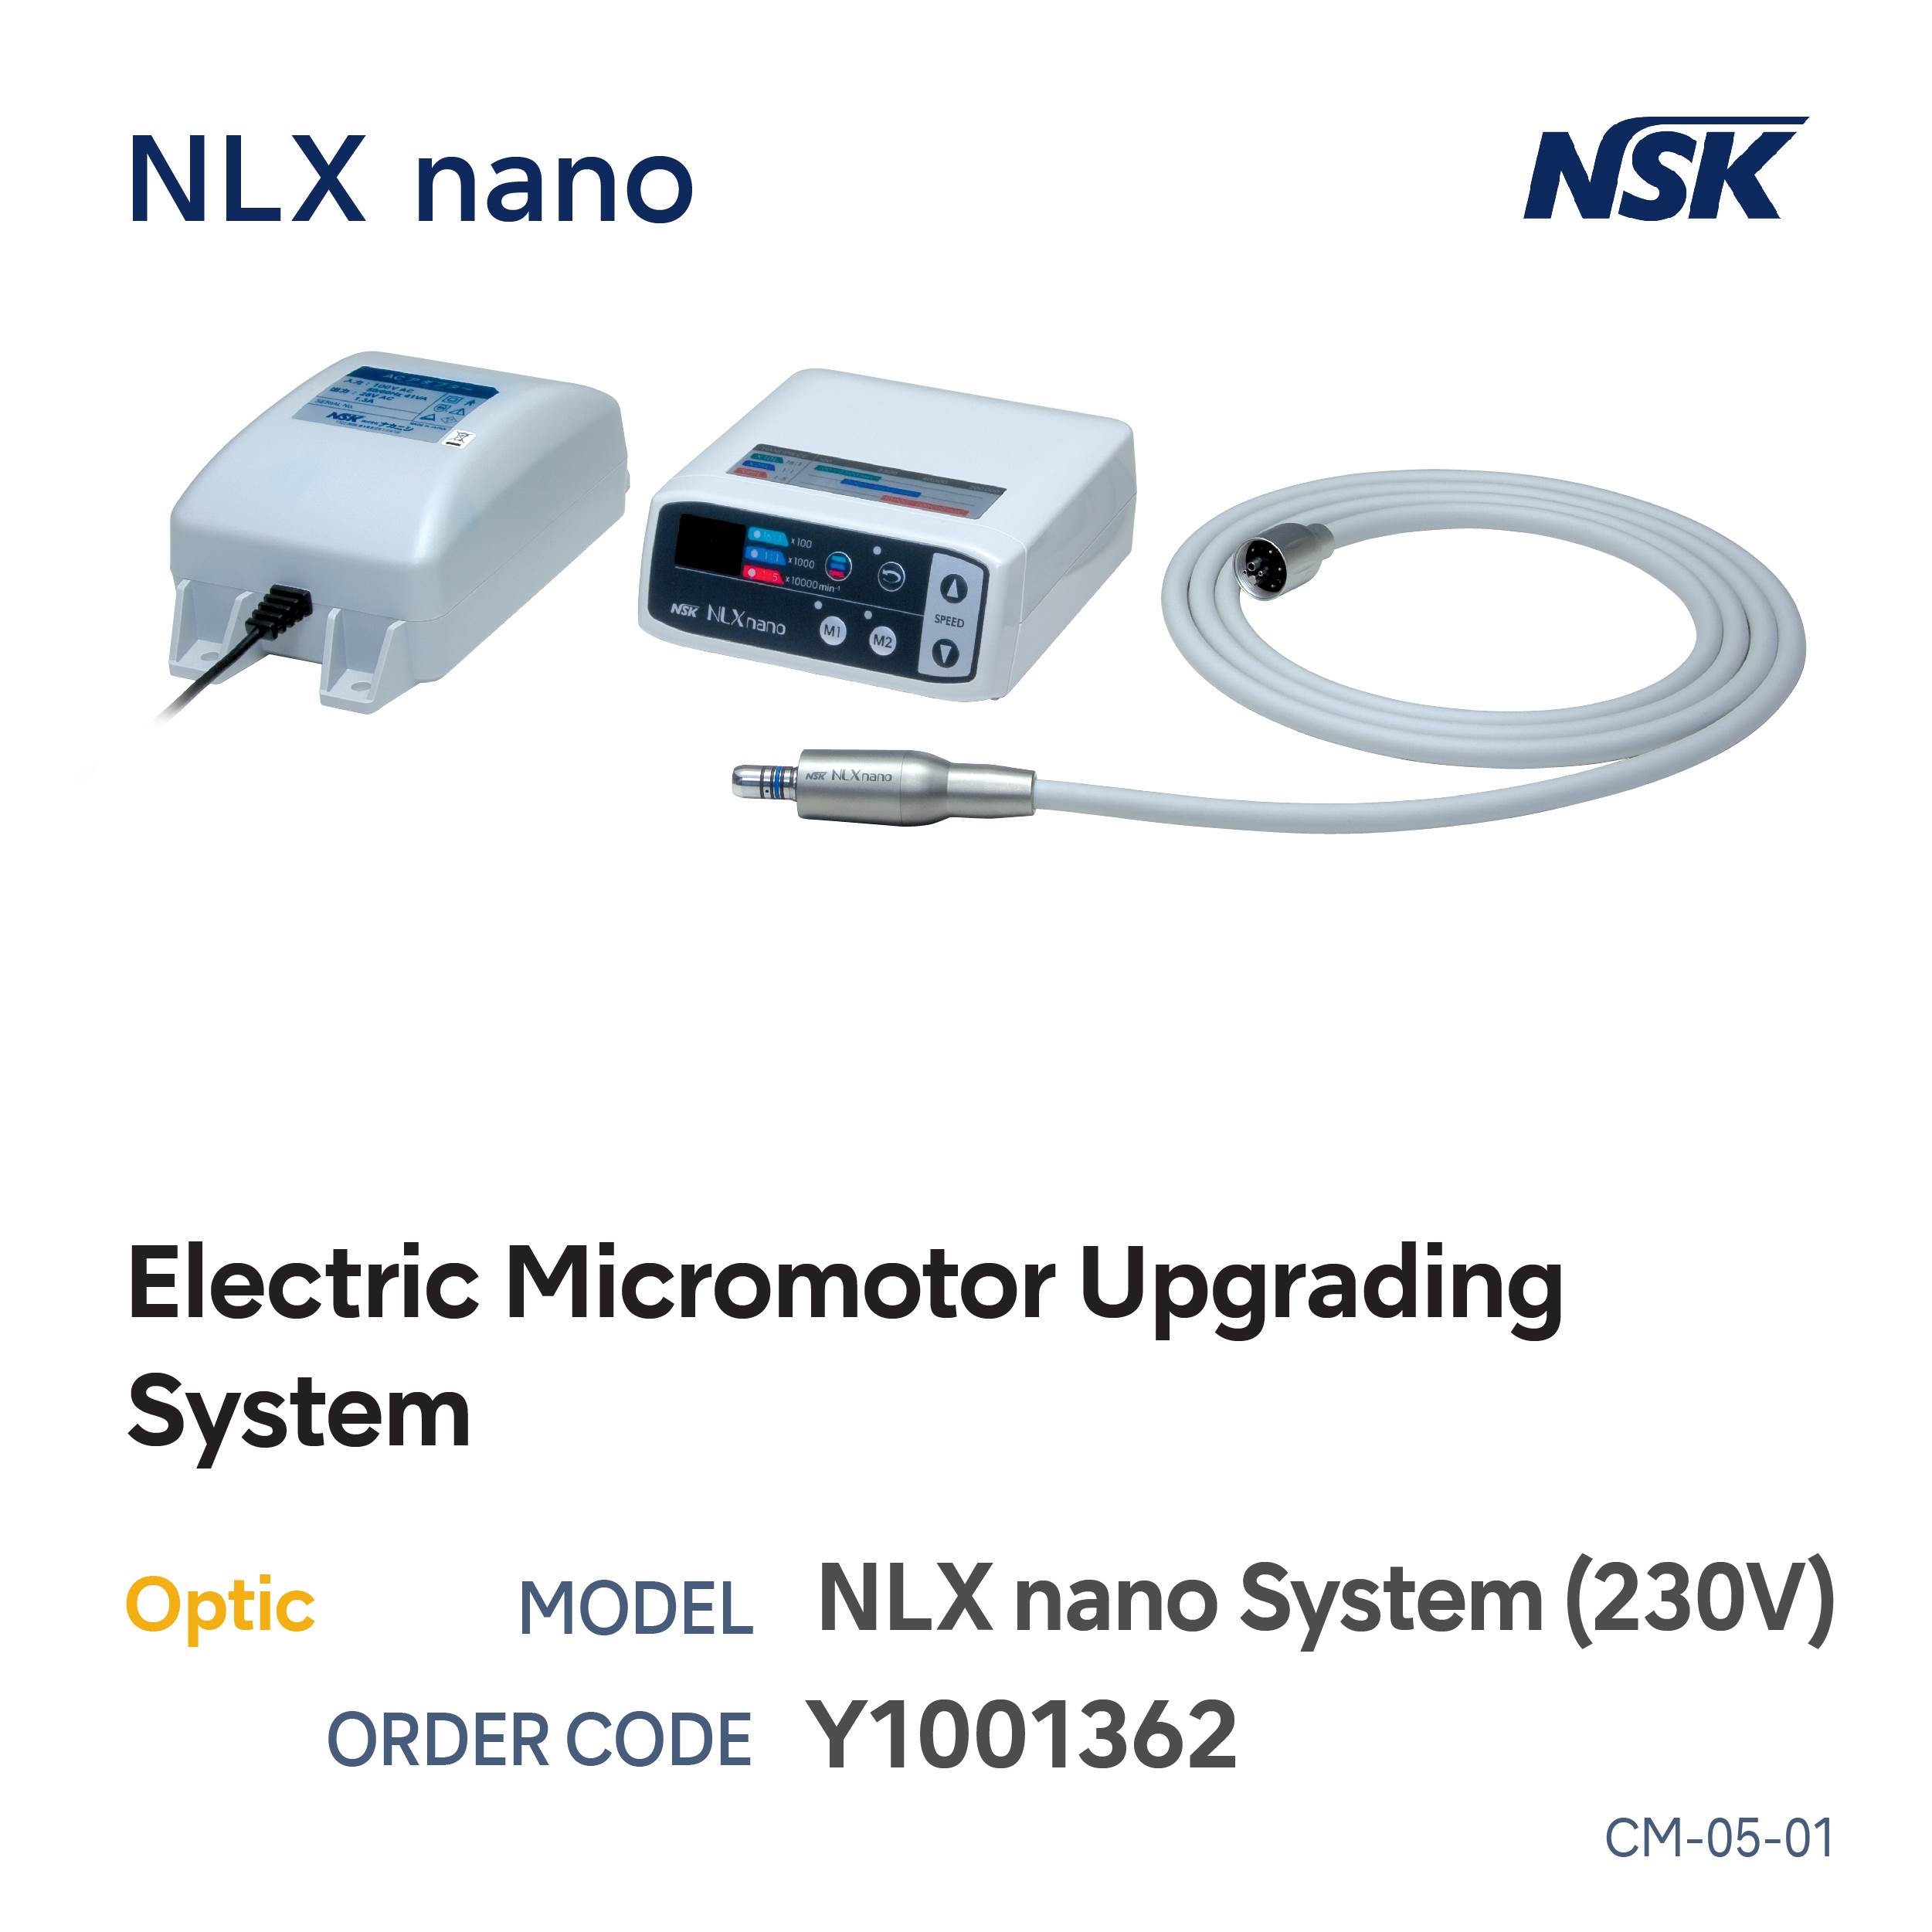 NLX NANO MICRO MOTOR & CONTROL UNIT